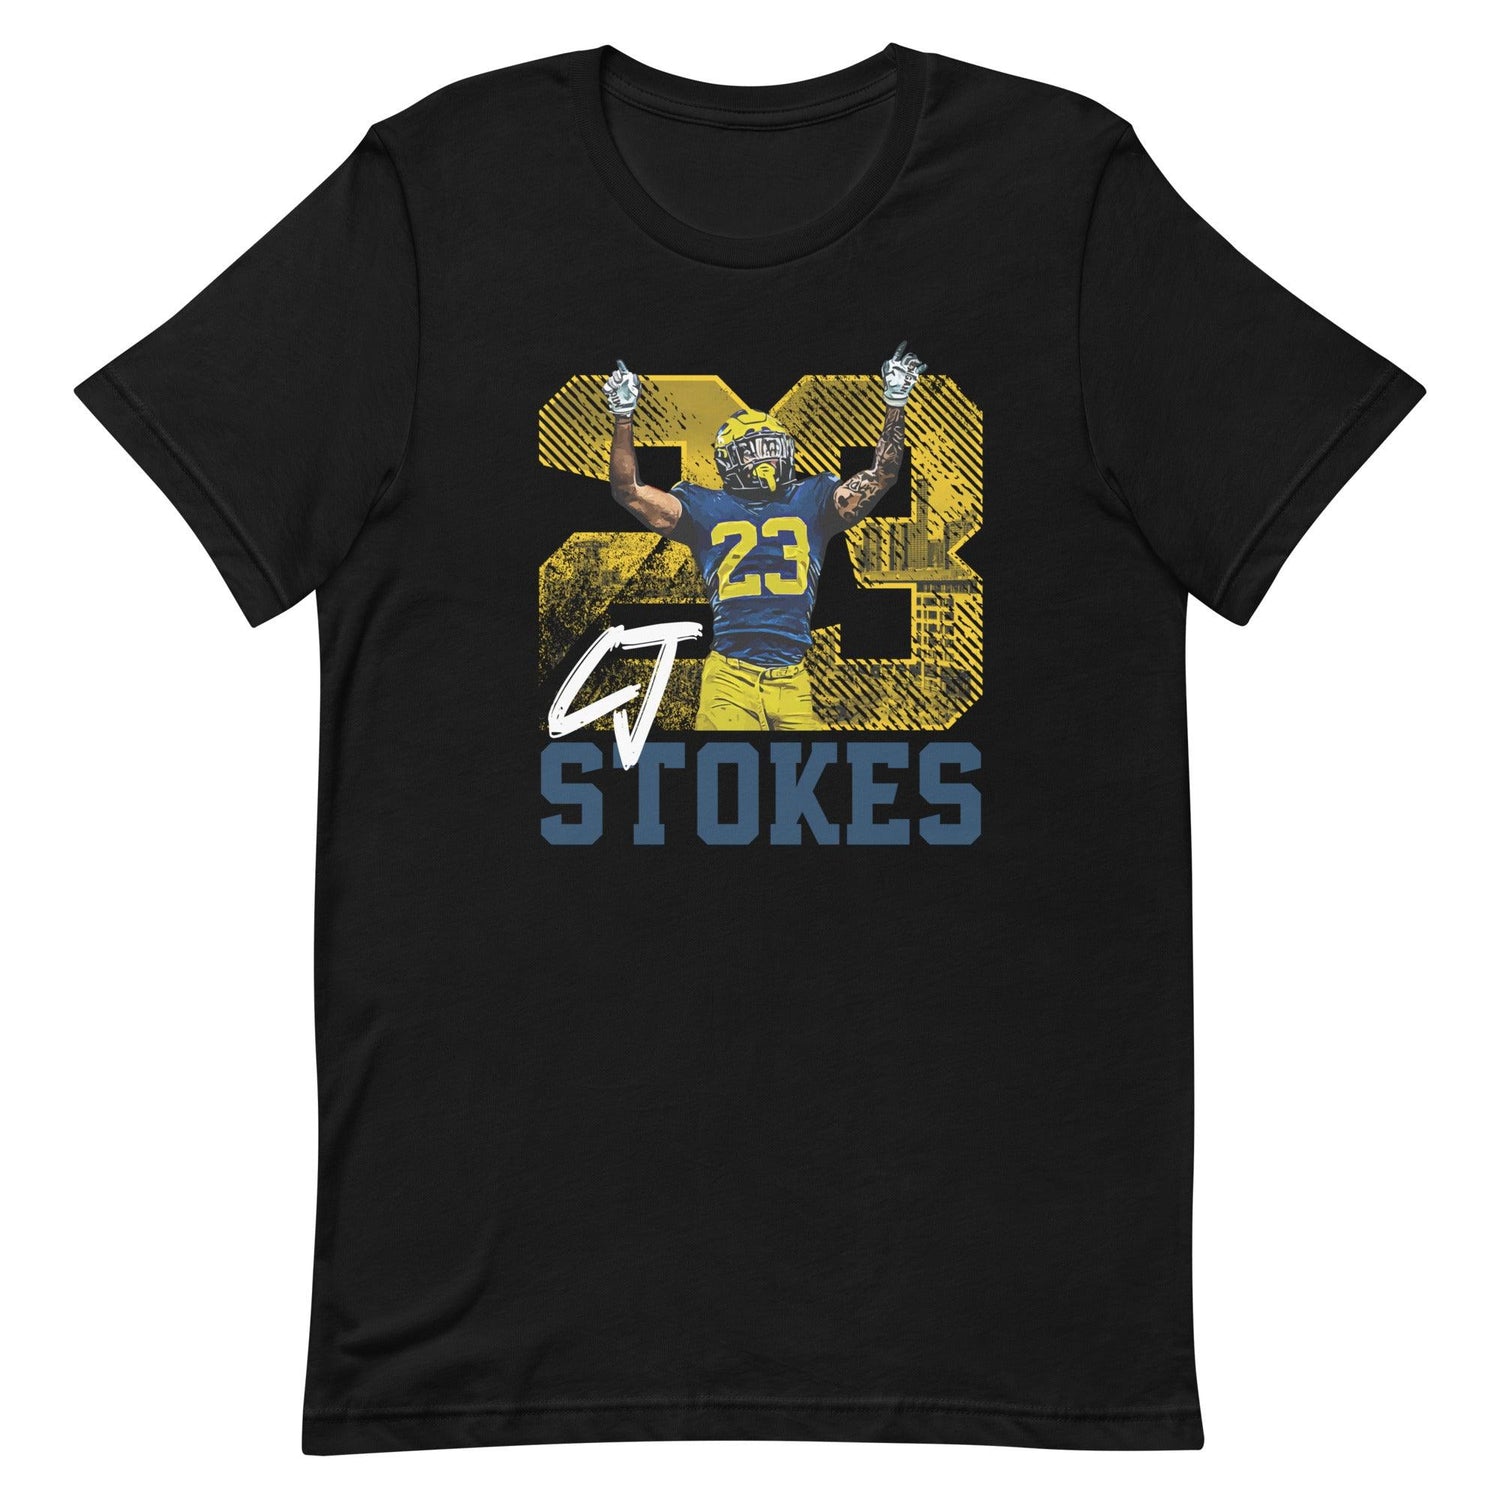 CJ Stokes "Jersey" t-shirt - Fan Arch